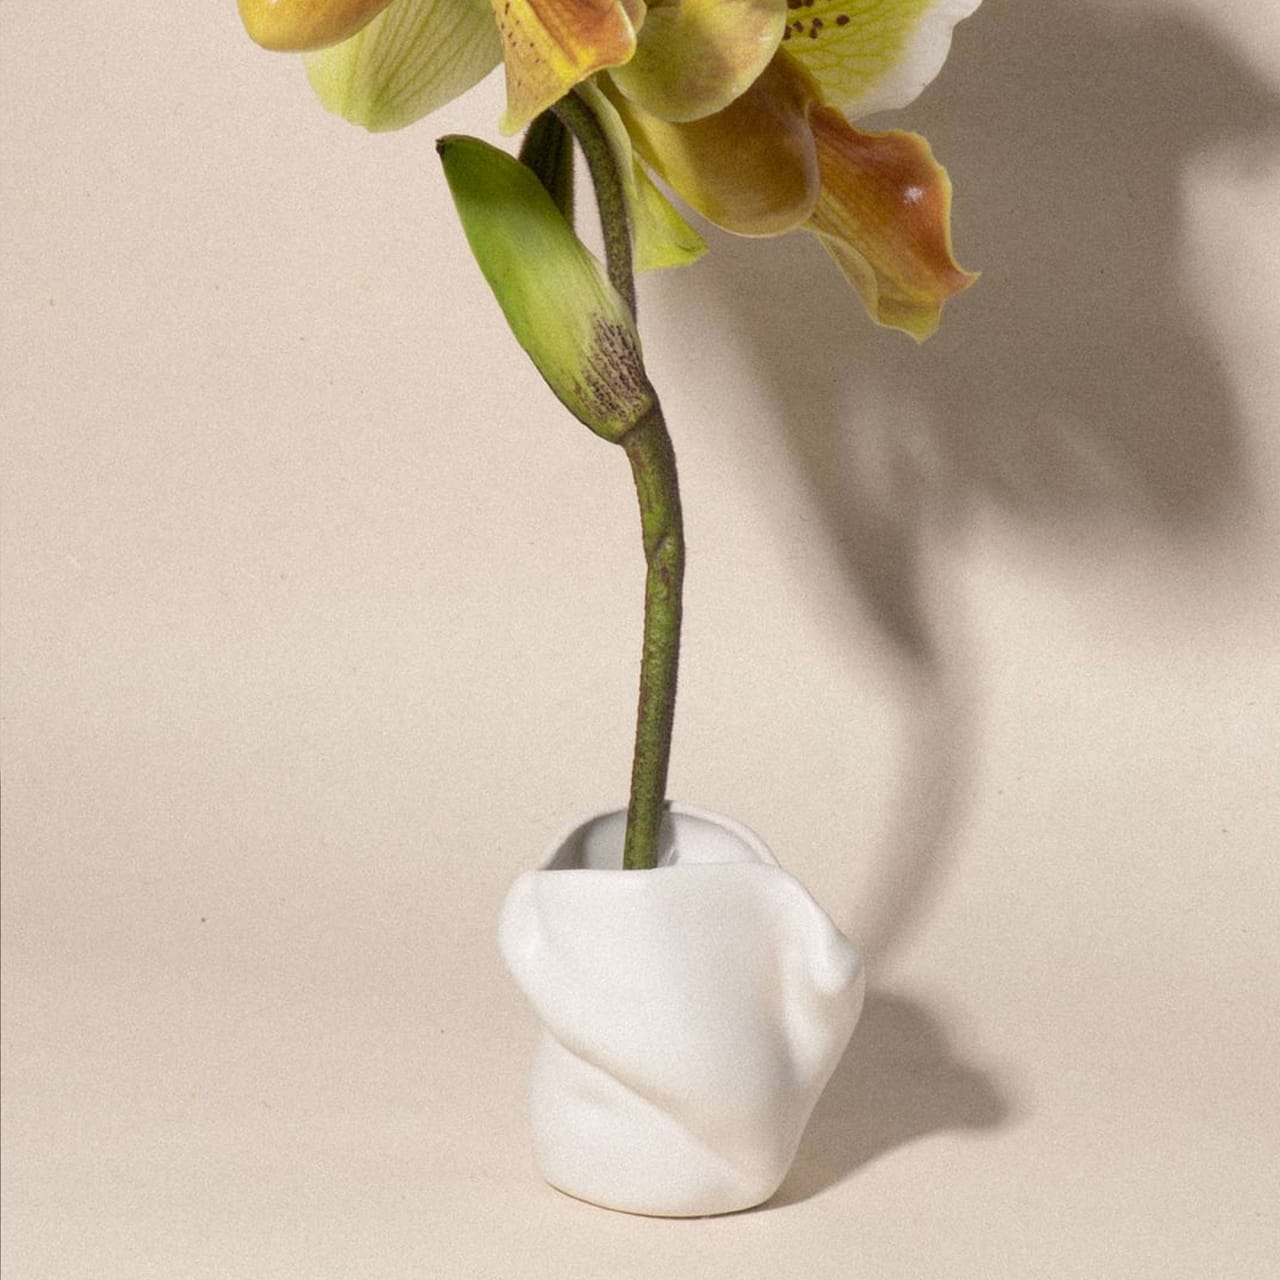 Postures Ceramic Vase